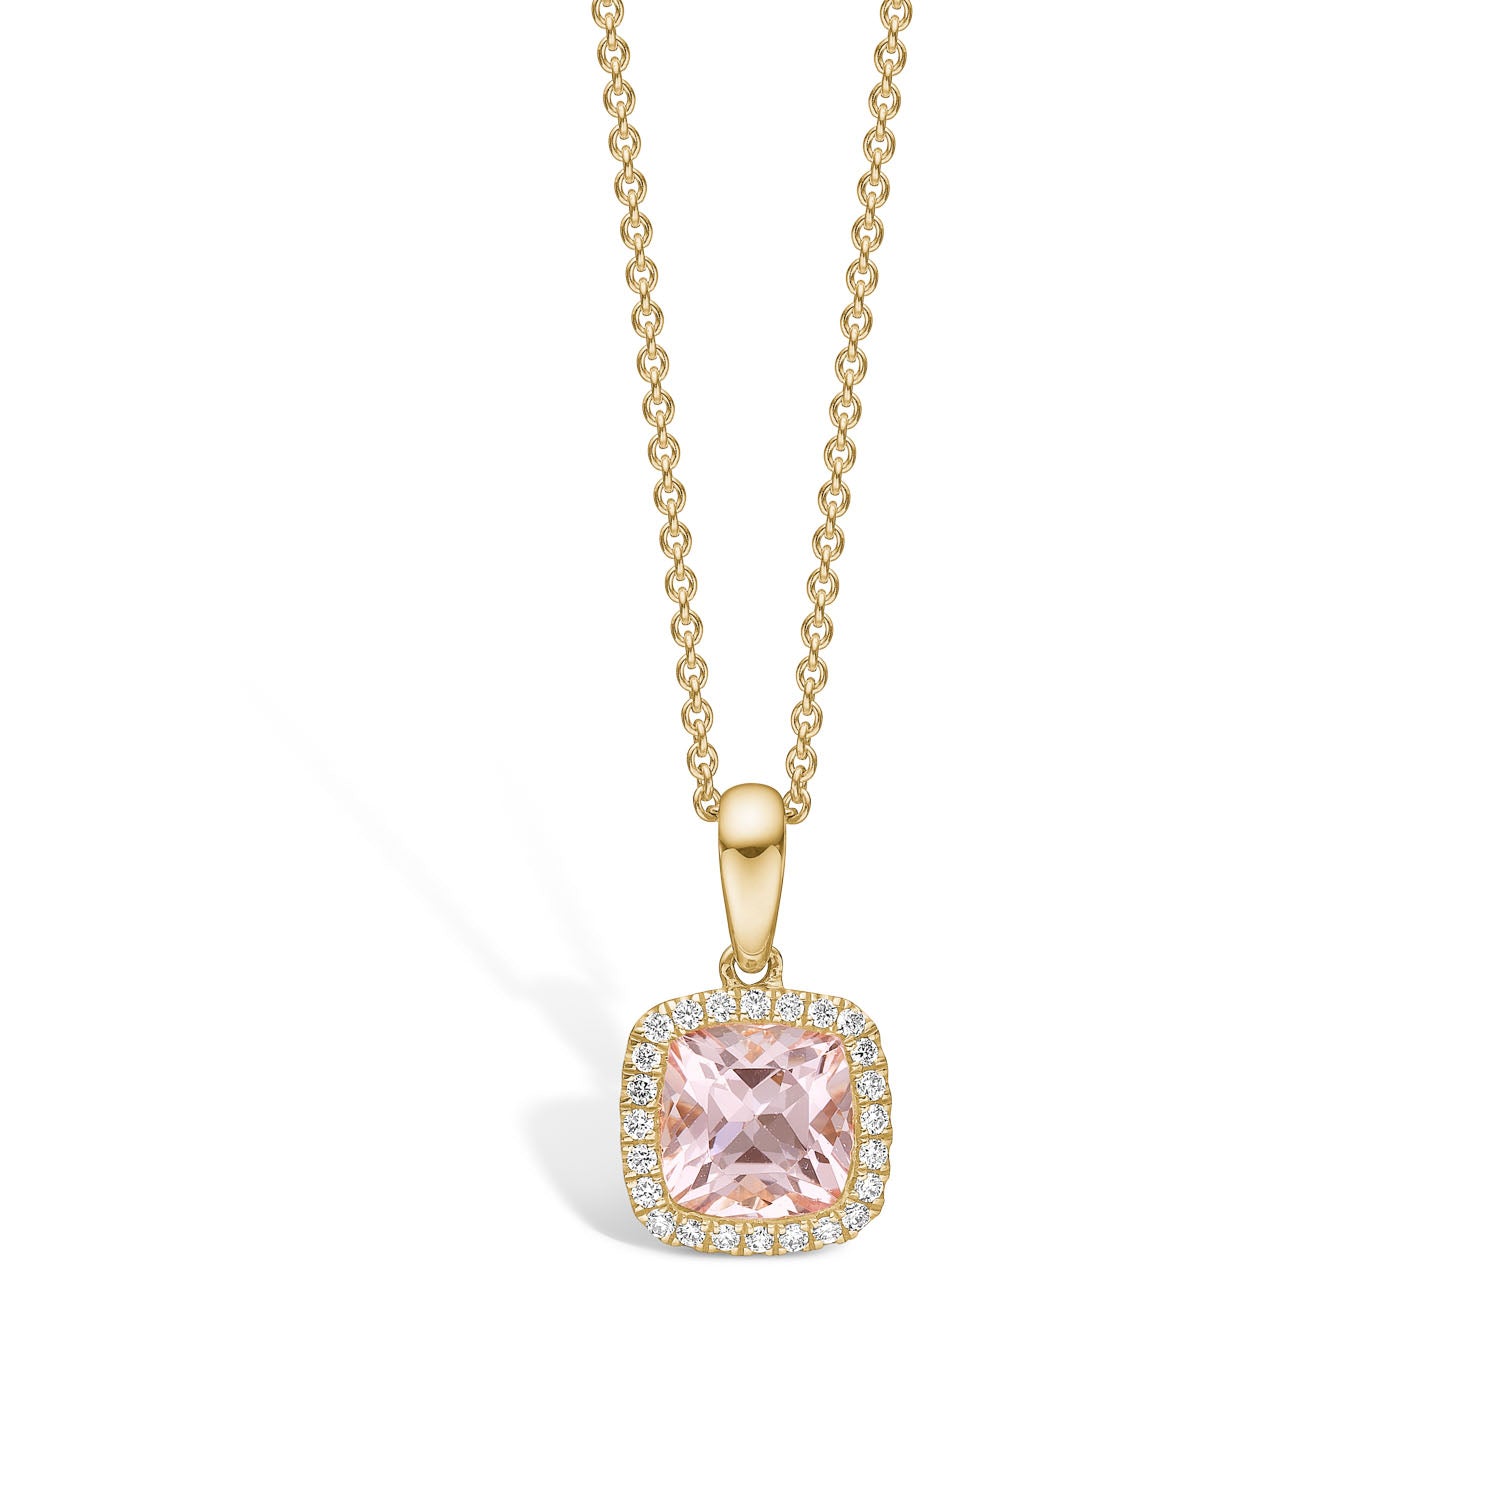 Flora Guldvedhæng med pink morganite og diamanter